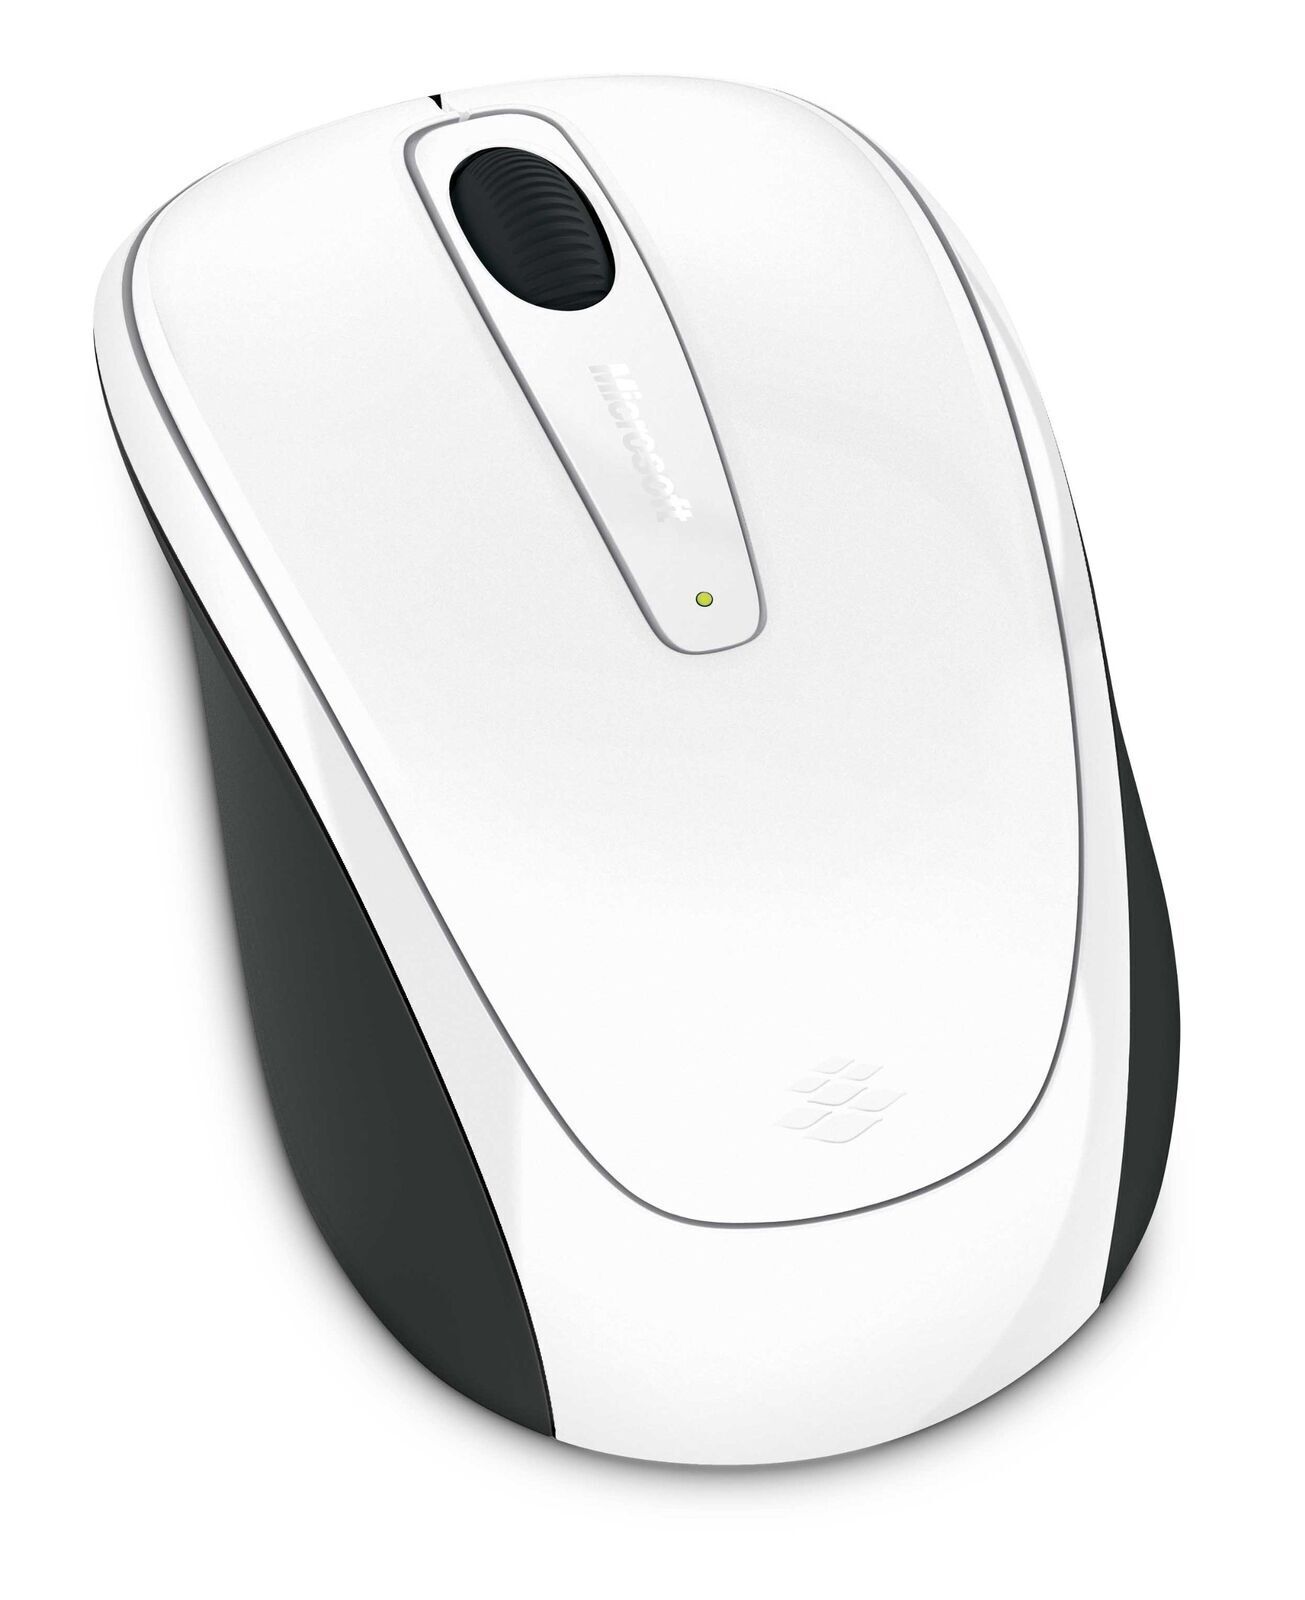 Microsoft GMF-00294 3500 Wireless. Mobile Mouse monotone